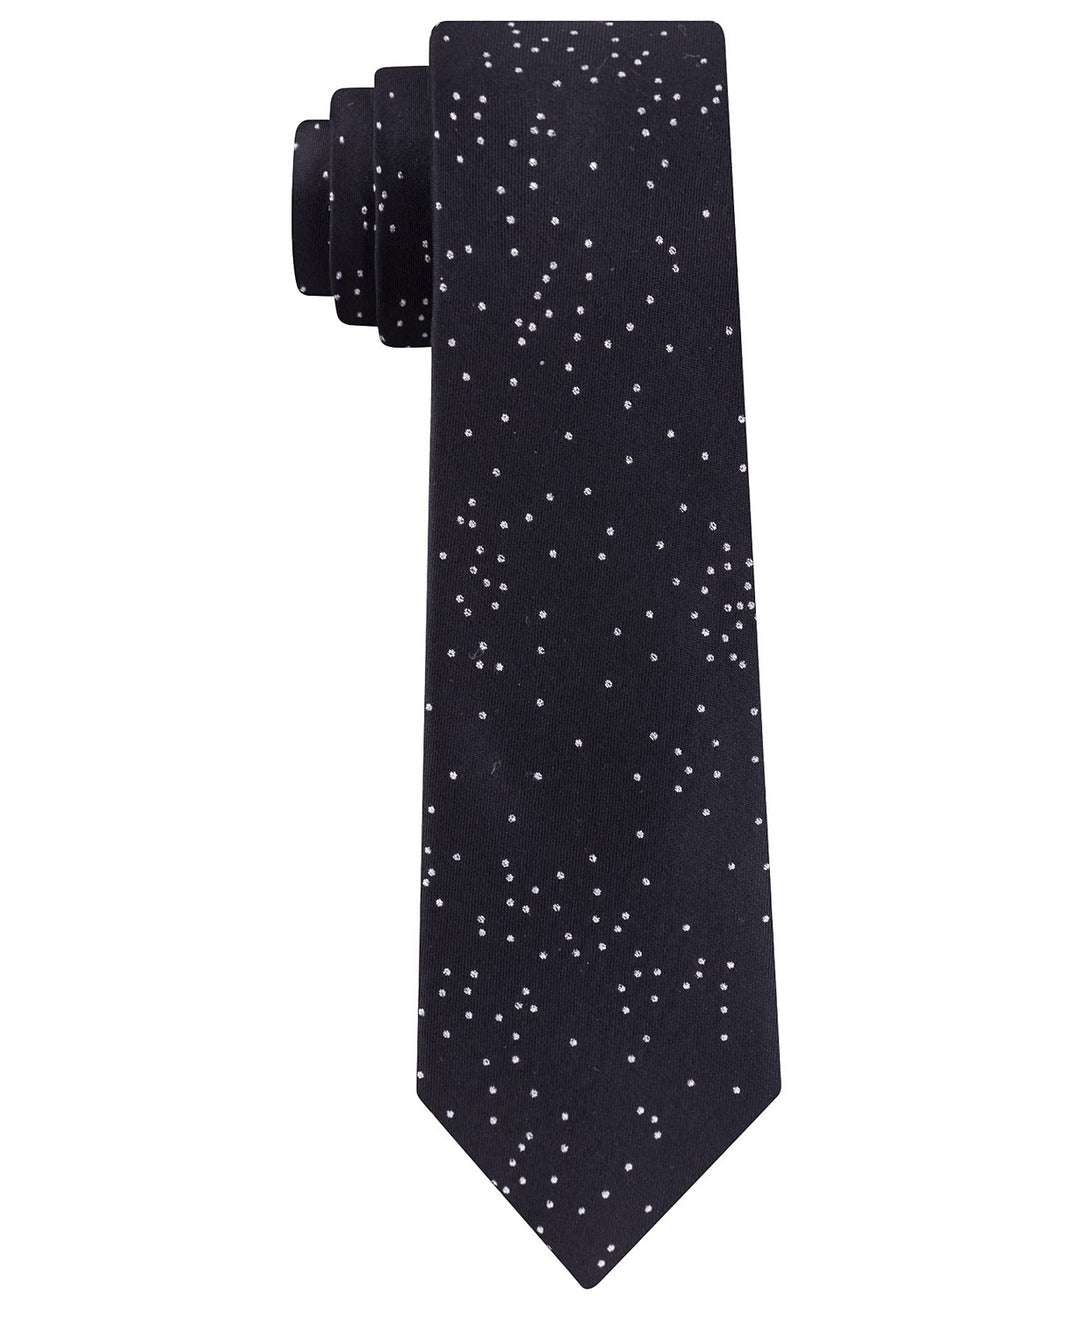 Calvin Klein Men's Speckled Dots Tie Black Size Regular